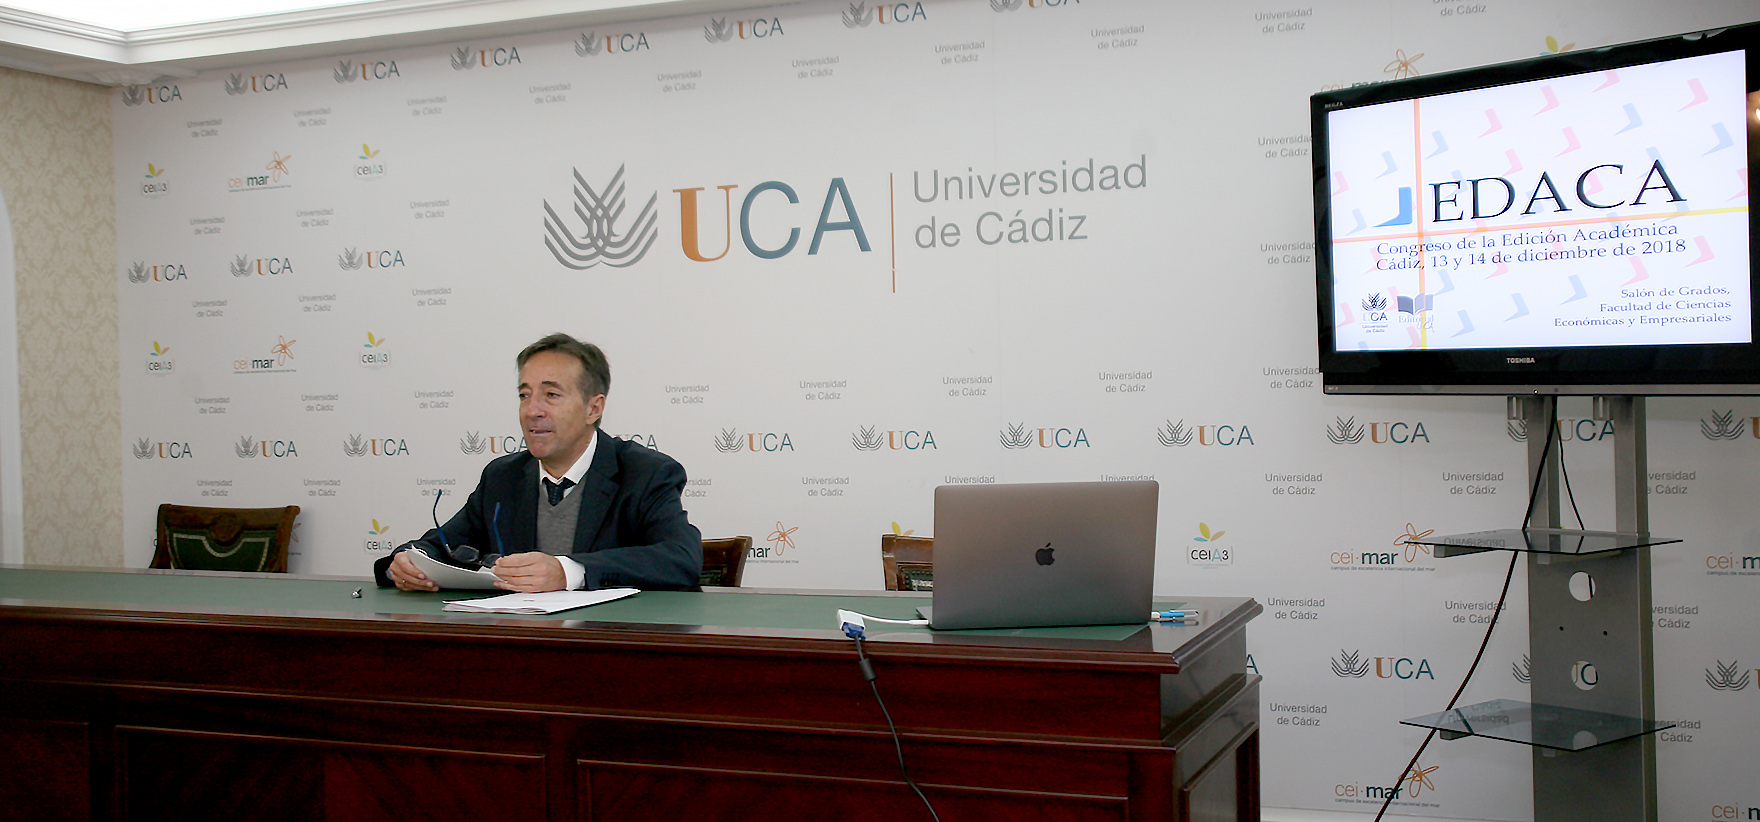 La UCA organiza en diciembre el I Congreso de la Edición Académica ‘EDACA’